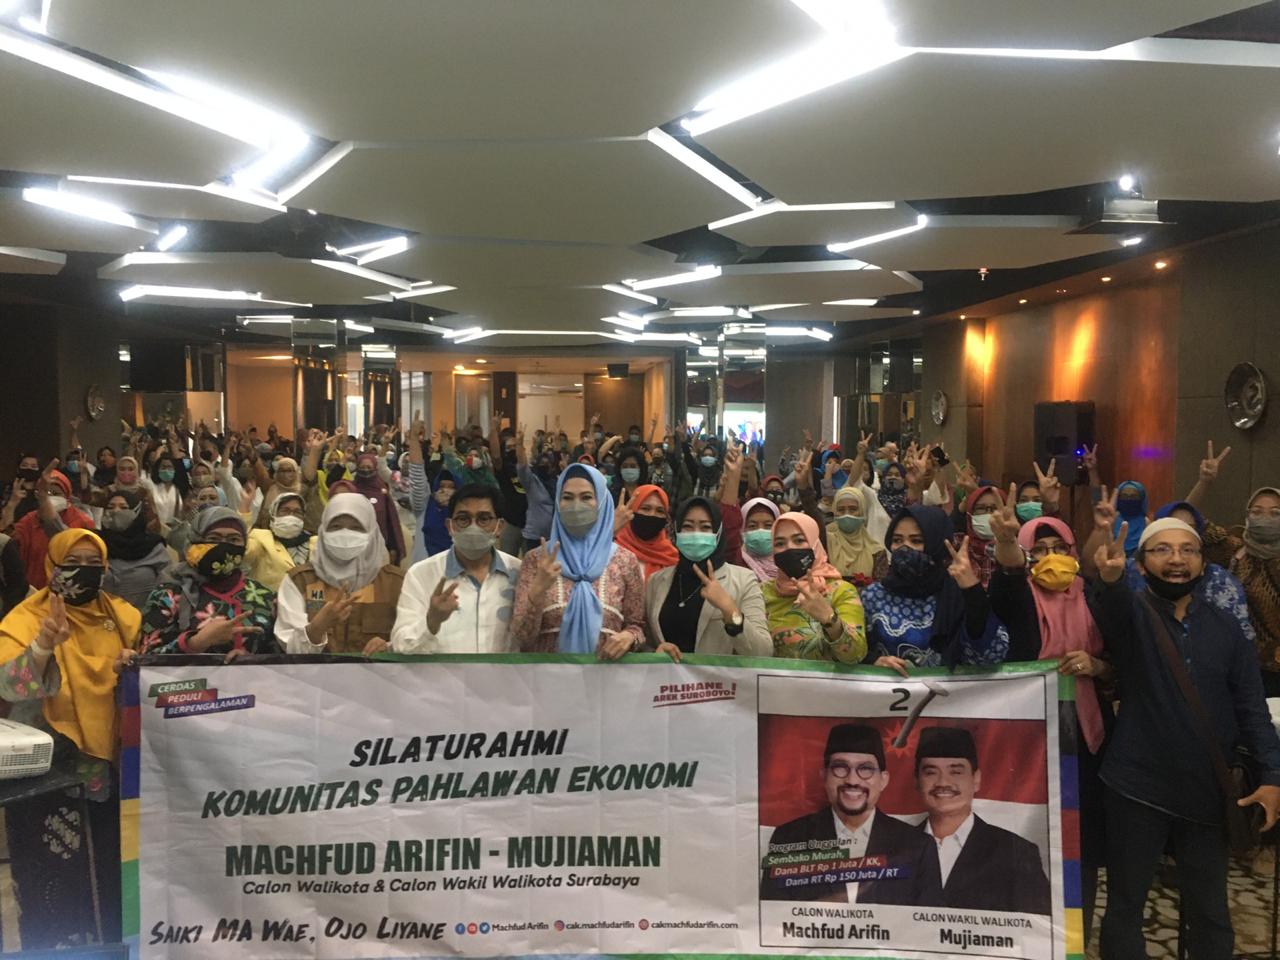 MAJU ketika bersilaturahmi dengan komunitas pahawan ekonomi Surabaya, Sabtu, 31 Oktober 2020. (Foto: Maju Center)